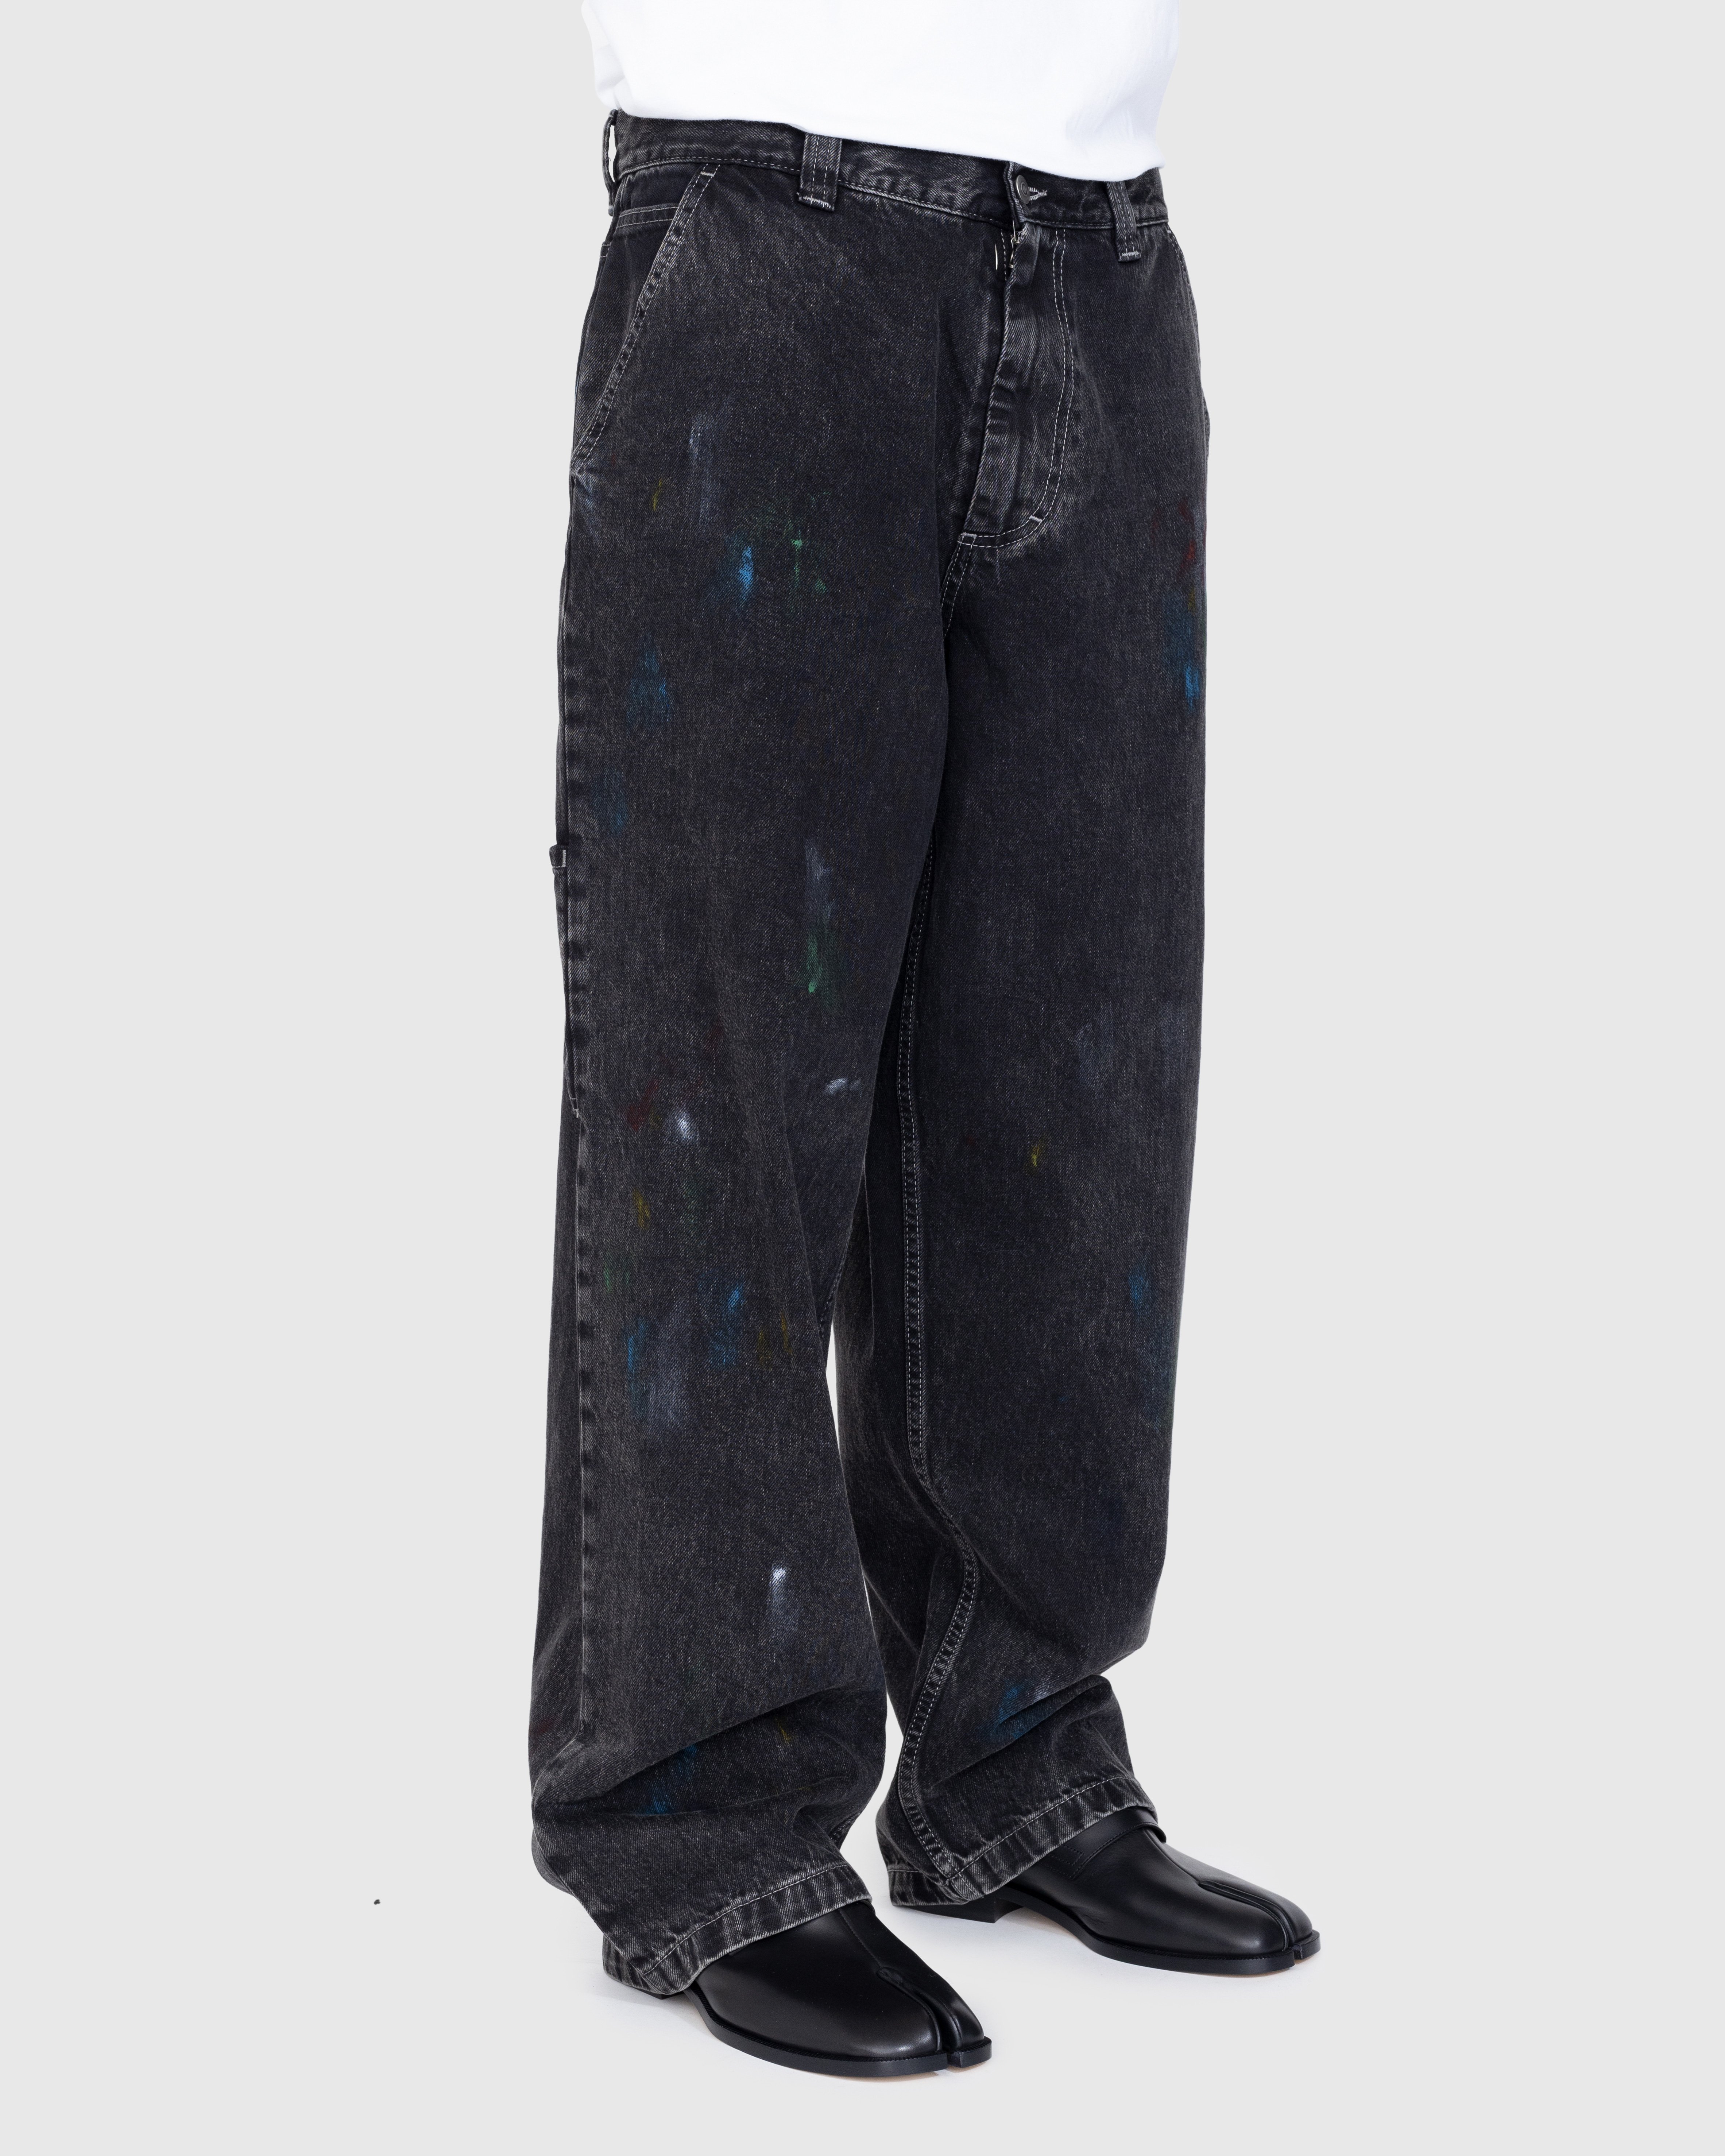 Maison Margiela - 5 Pocket Pants Washed Black - Clothing - Black - Image 4